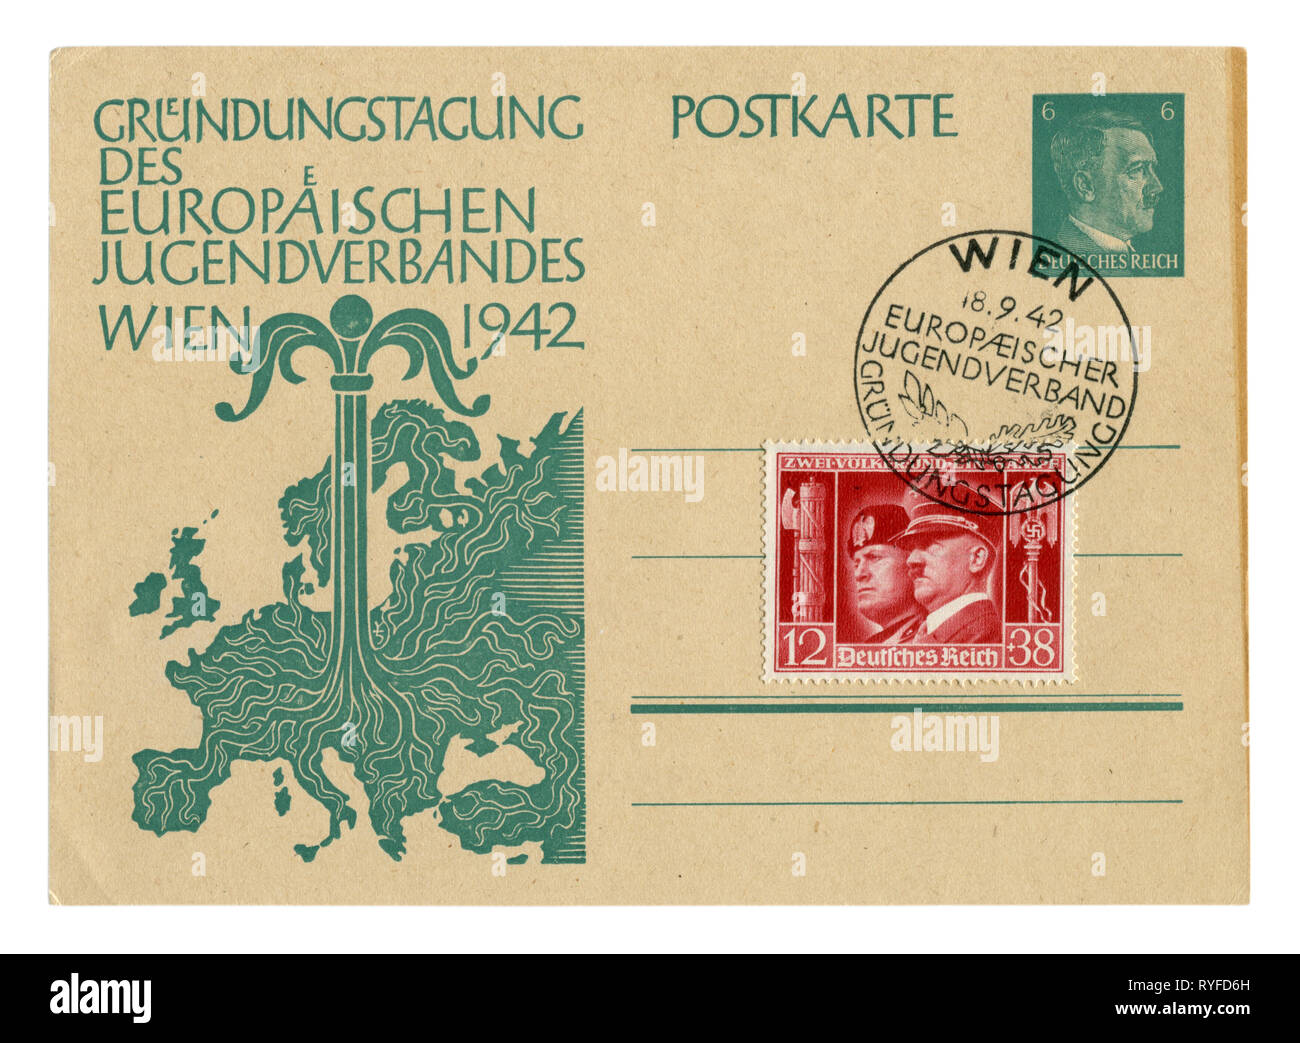 Deutsche Historische Postkarte: Tag der Gründung der Europäischen Jugendorganisation. Junge Baum in der Mitte der Karte von Europa wächst. Deutschland, Stockfoto